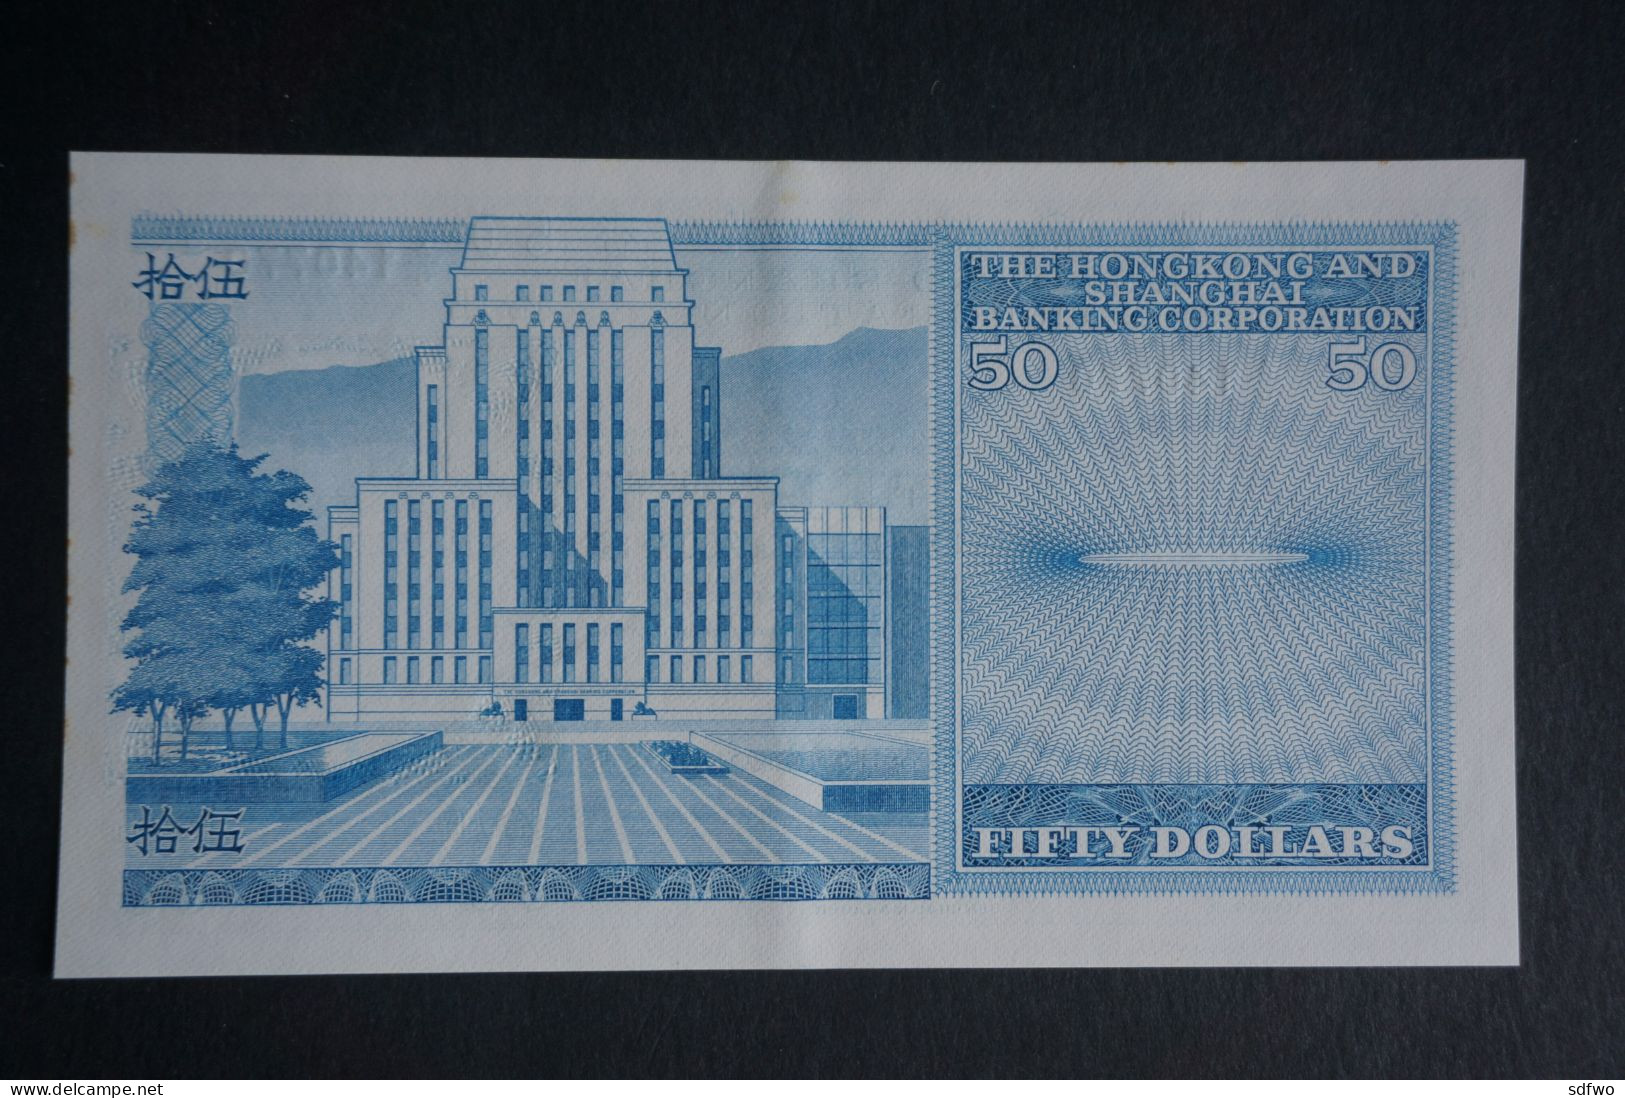 (M) 1983 HONG KONG OLD ISSUE - HSBC 50 DOLLARS ($50) #A/6 140770 - Hongkong